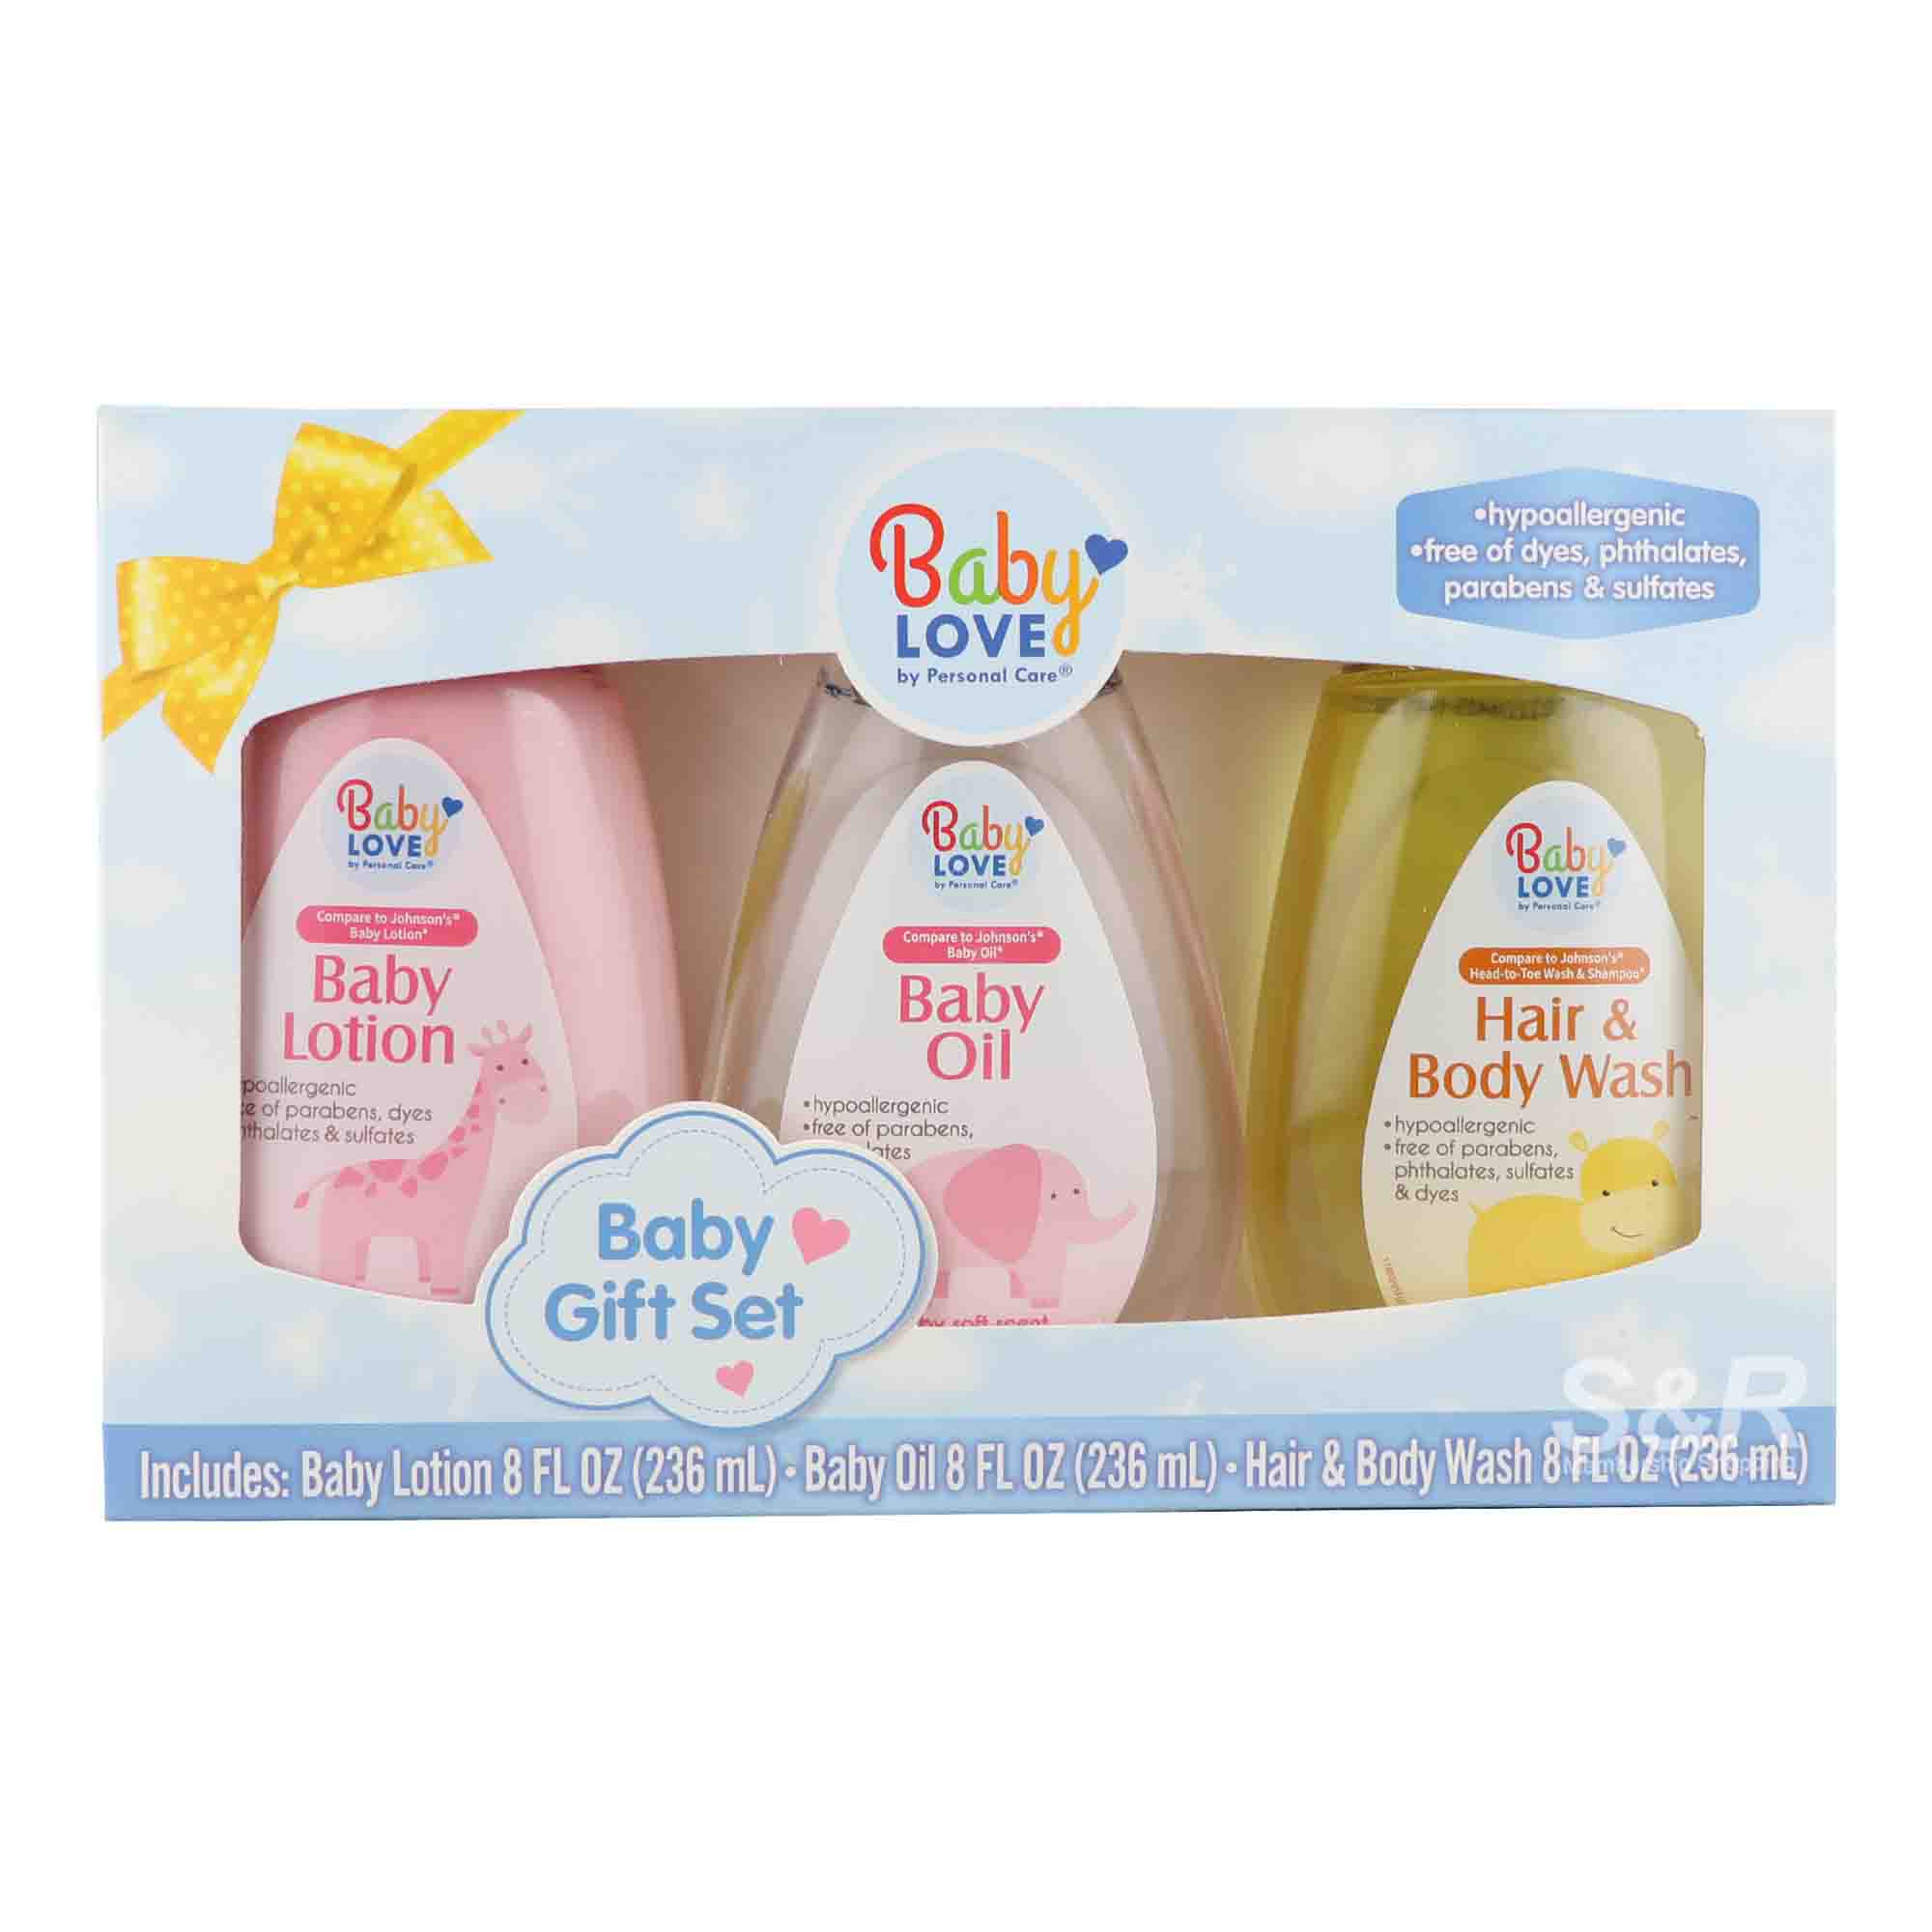 Baby Love Baby Gift Set (236mL x 3pcs)